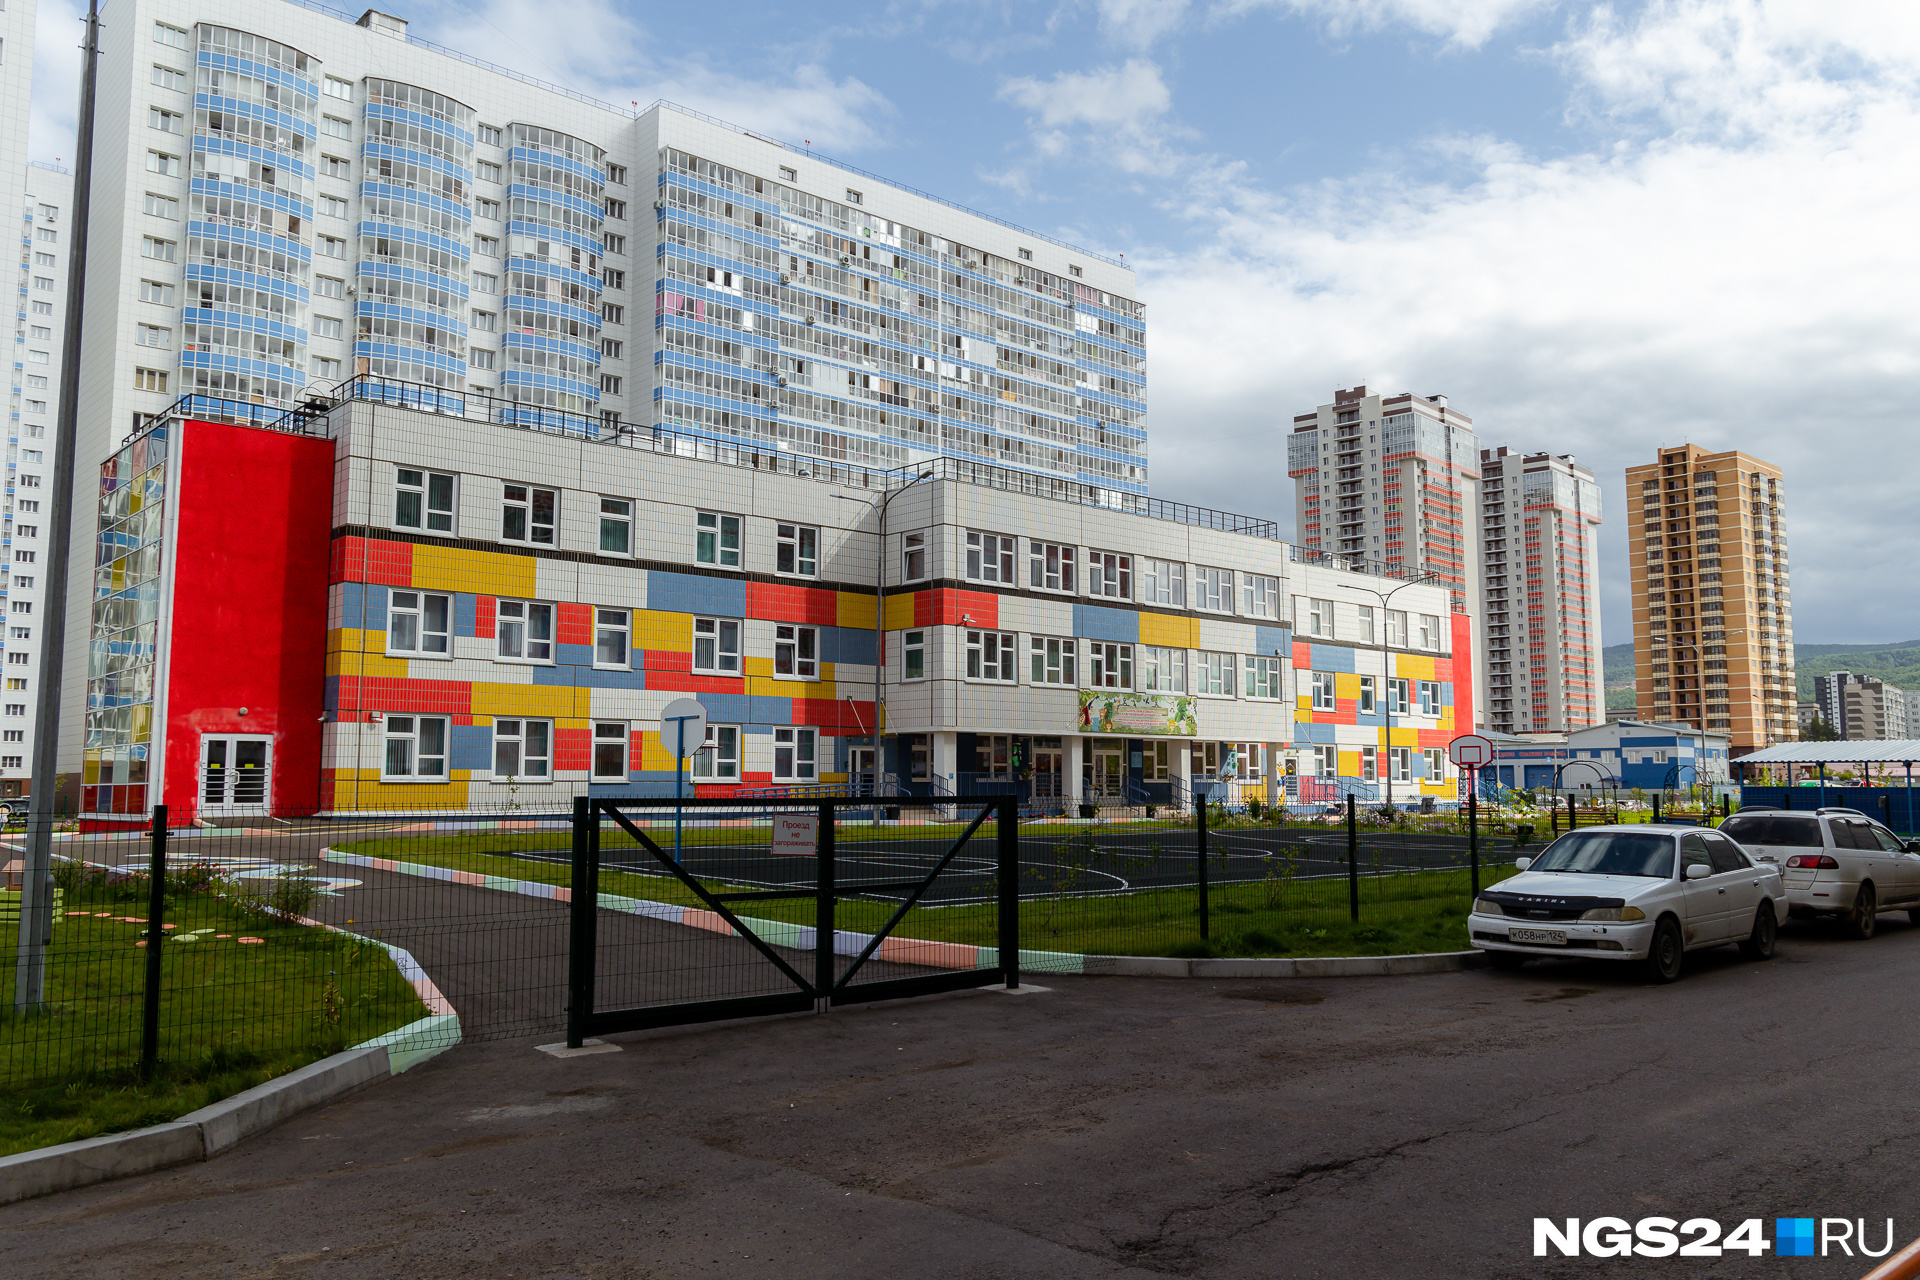 Увидеть детский садик во дворе дома — для Красноярска это стало обычным явлением